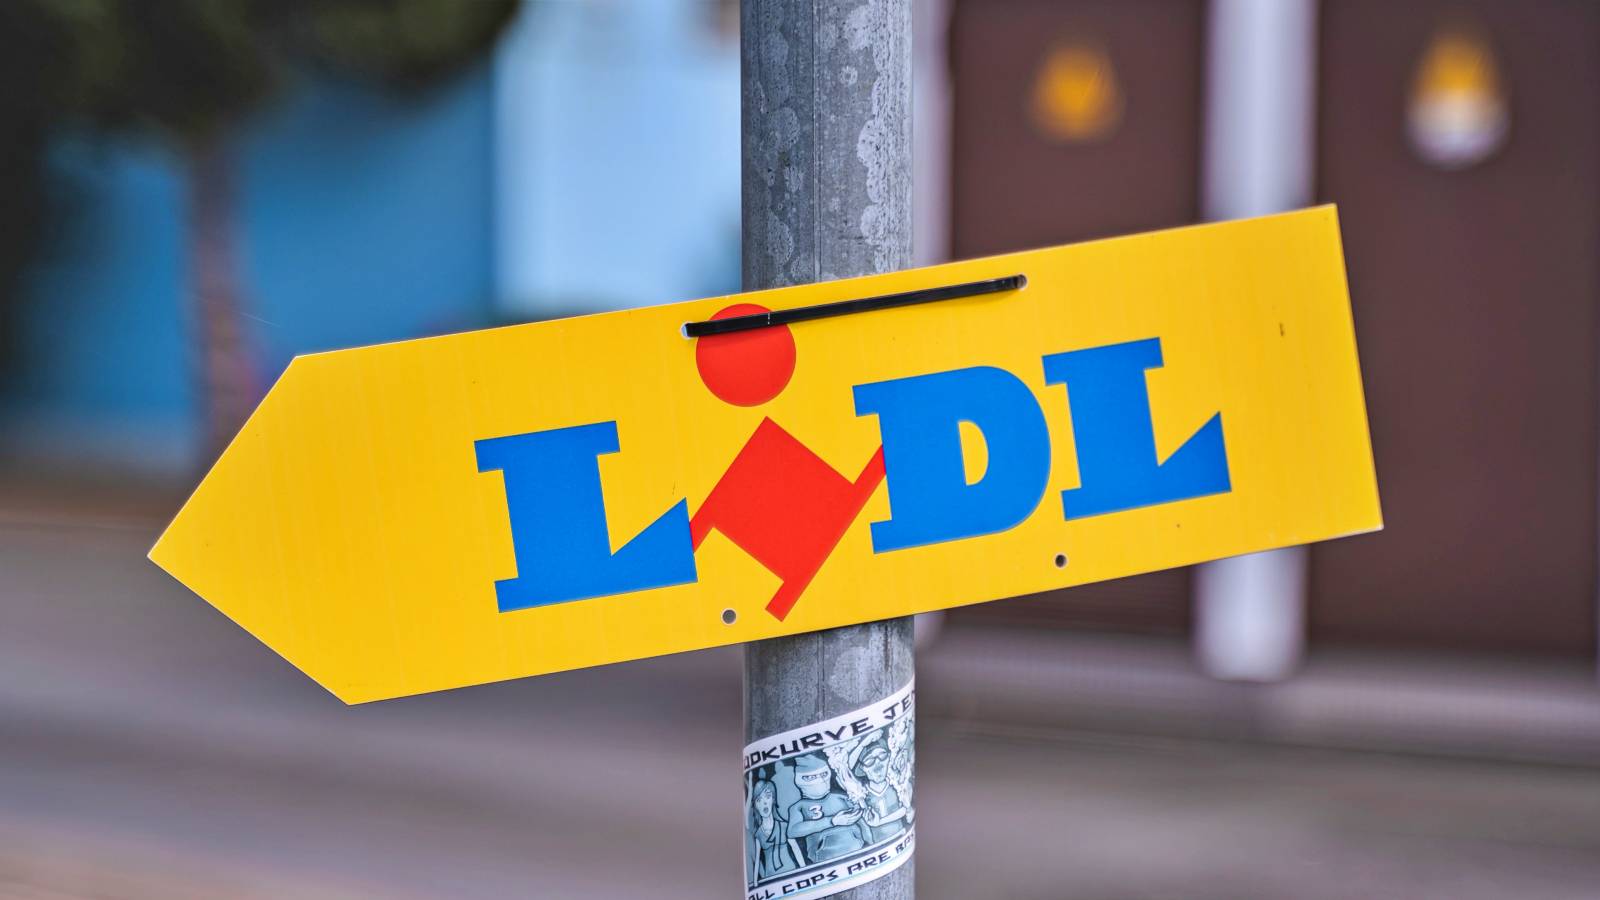 LIDL Rumänien hat Änderungen für Sie vorbereitet. Die Geschäfte geben offiziell alles bekannt